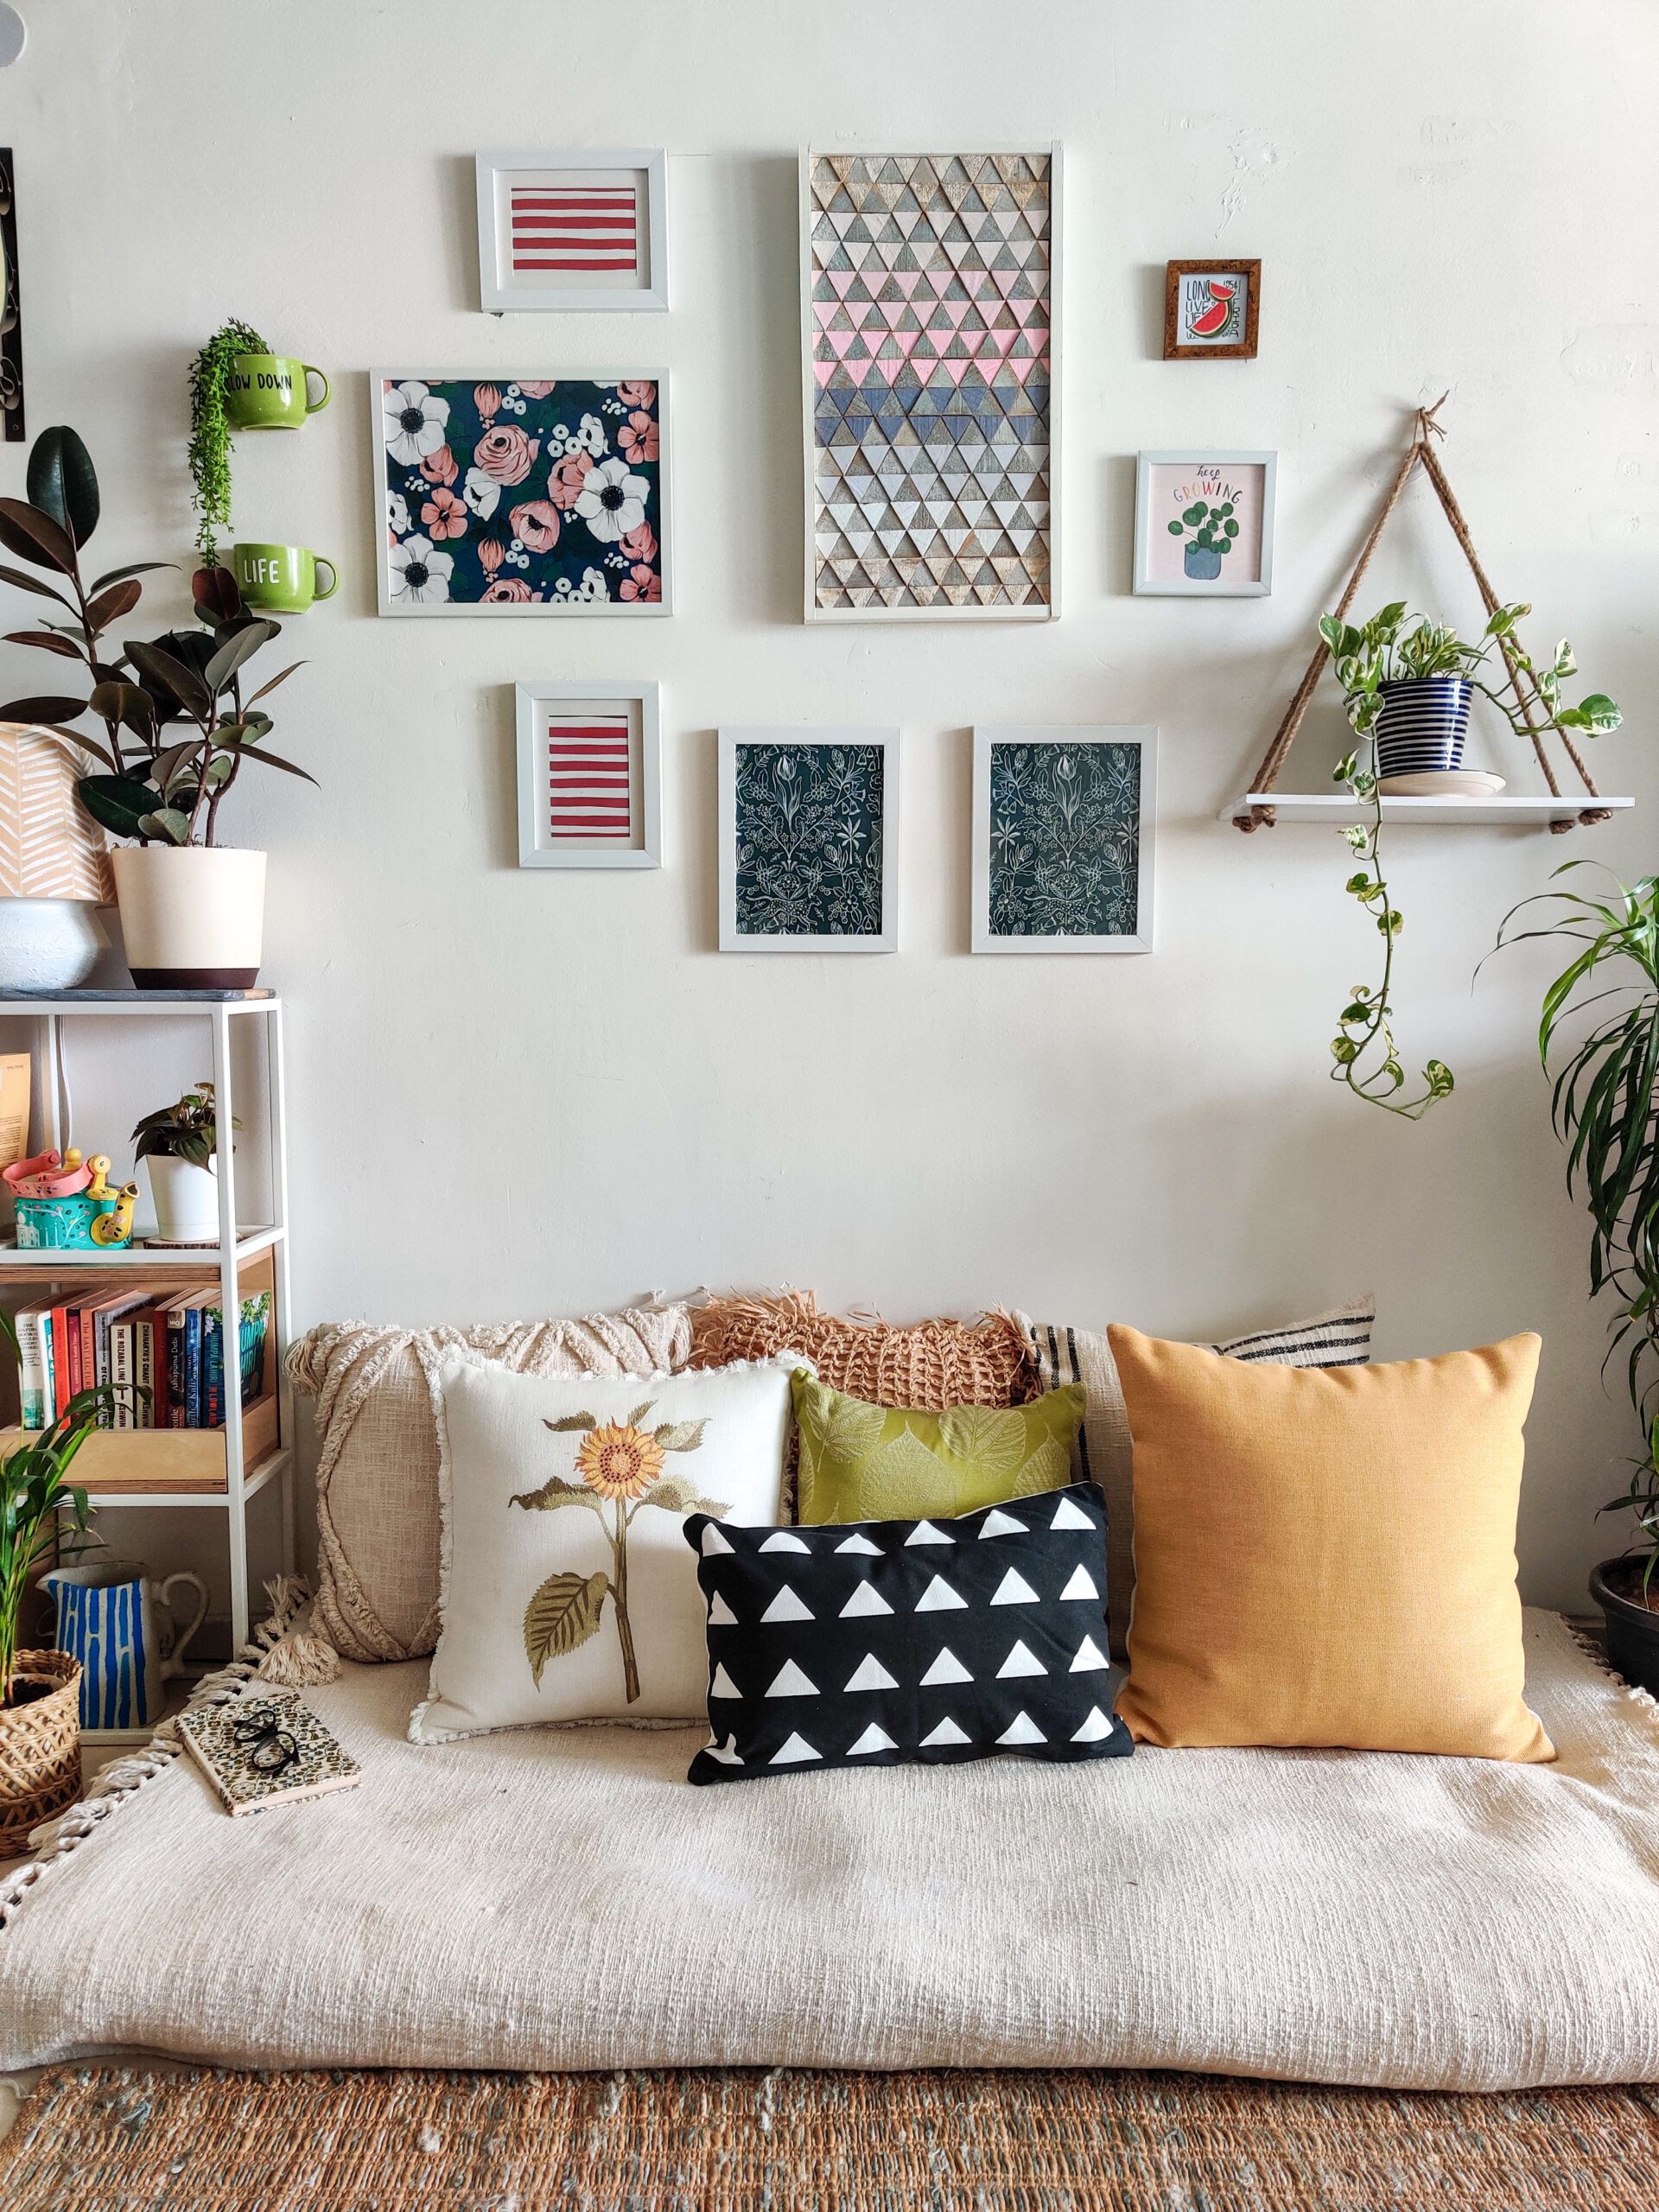 15 DIY Home Decor Items You Can make – Home and Garden